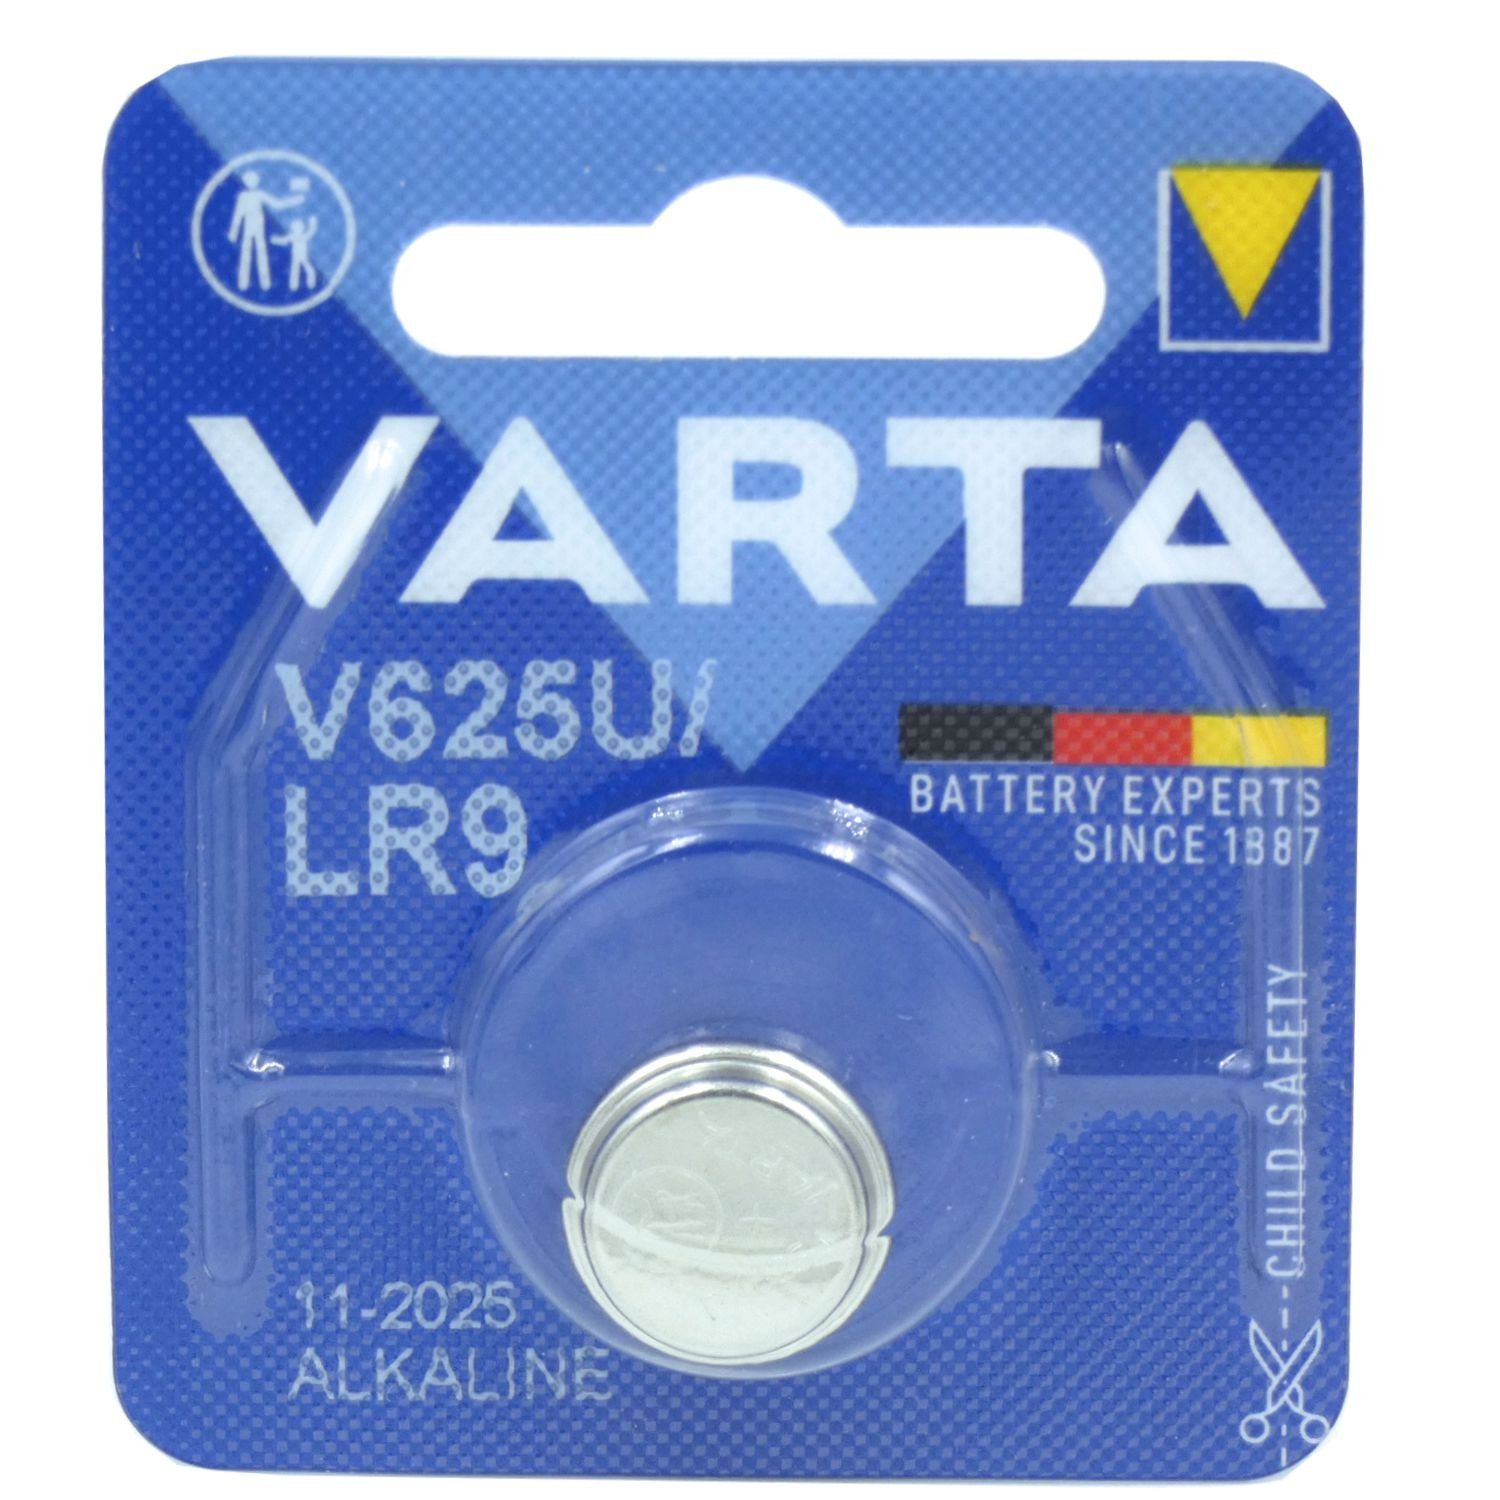 VARTA Varta Batterie, Batterie, (1,5 LR9, 4626) V625U (Type Volt PX625, Knopfzelle 1,5V V)